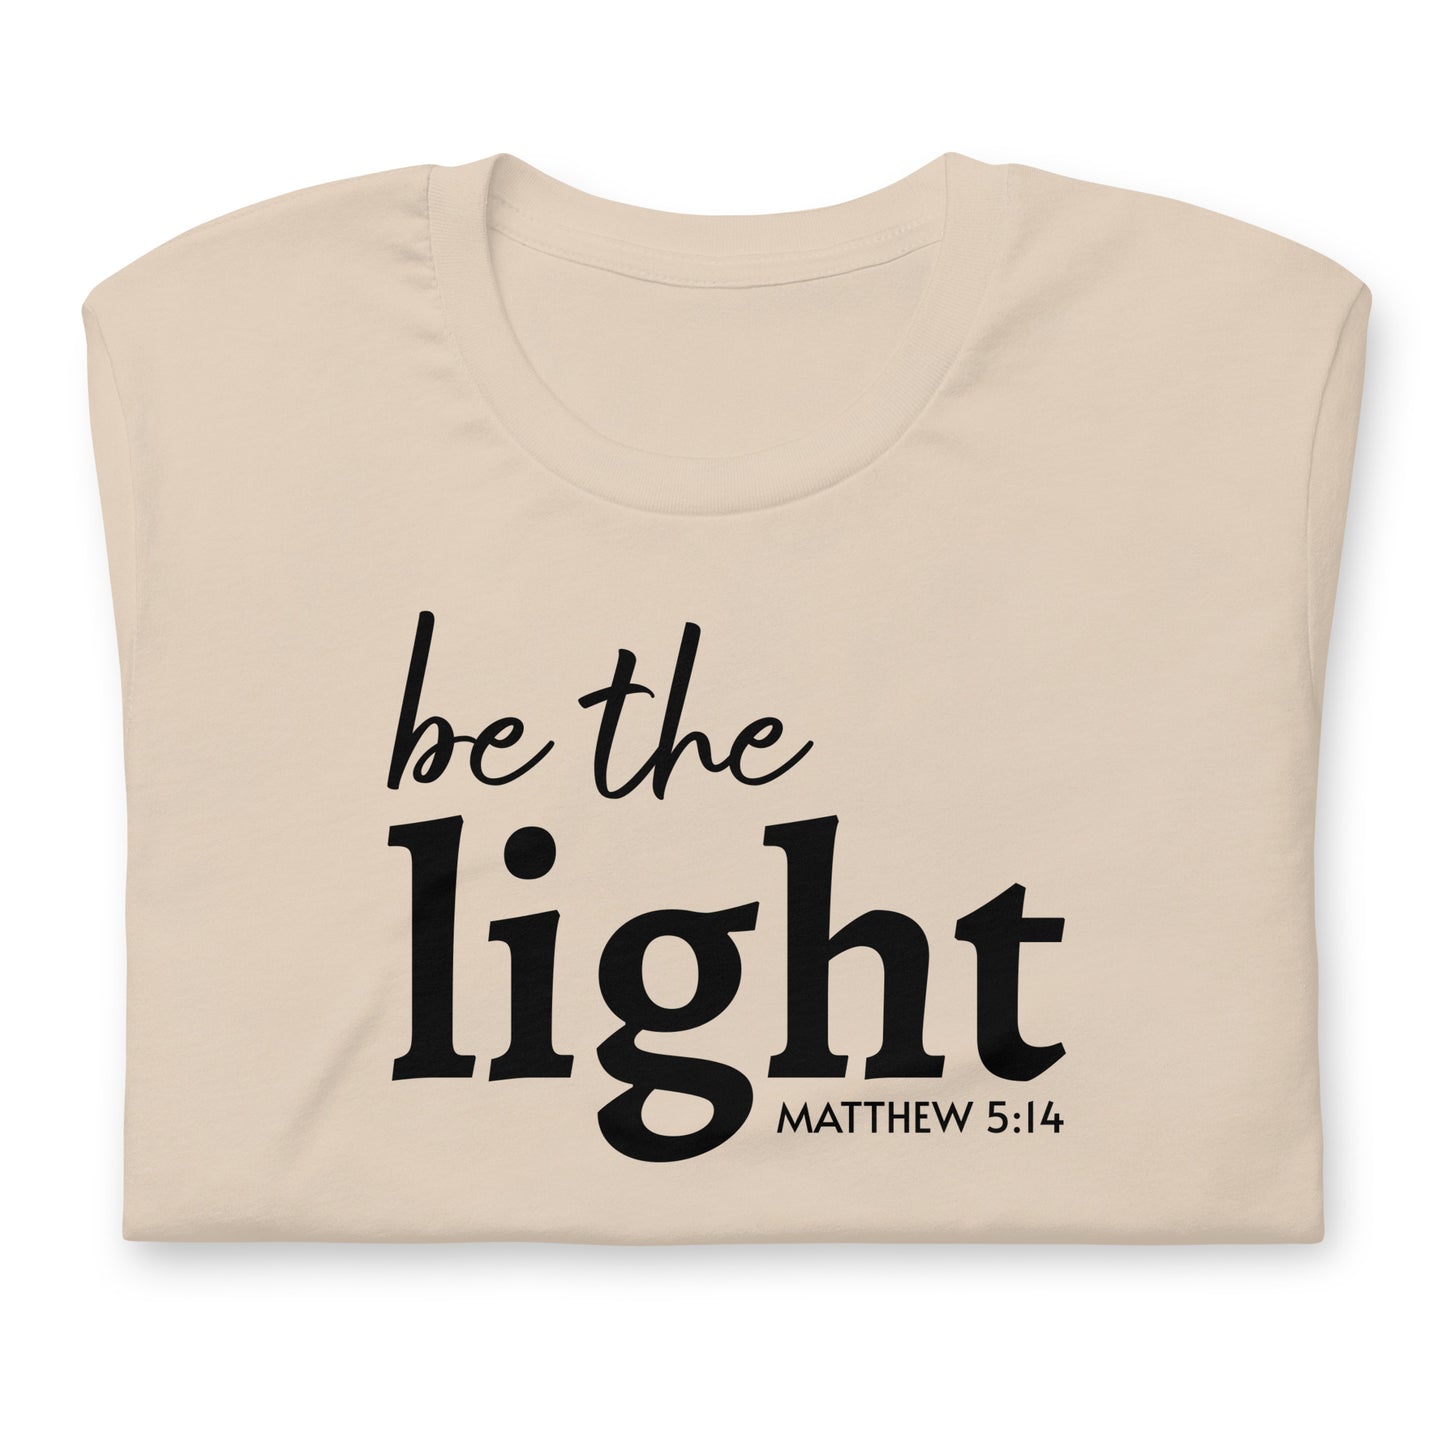 Be the Light Short Sleeve T-Shirt